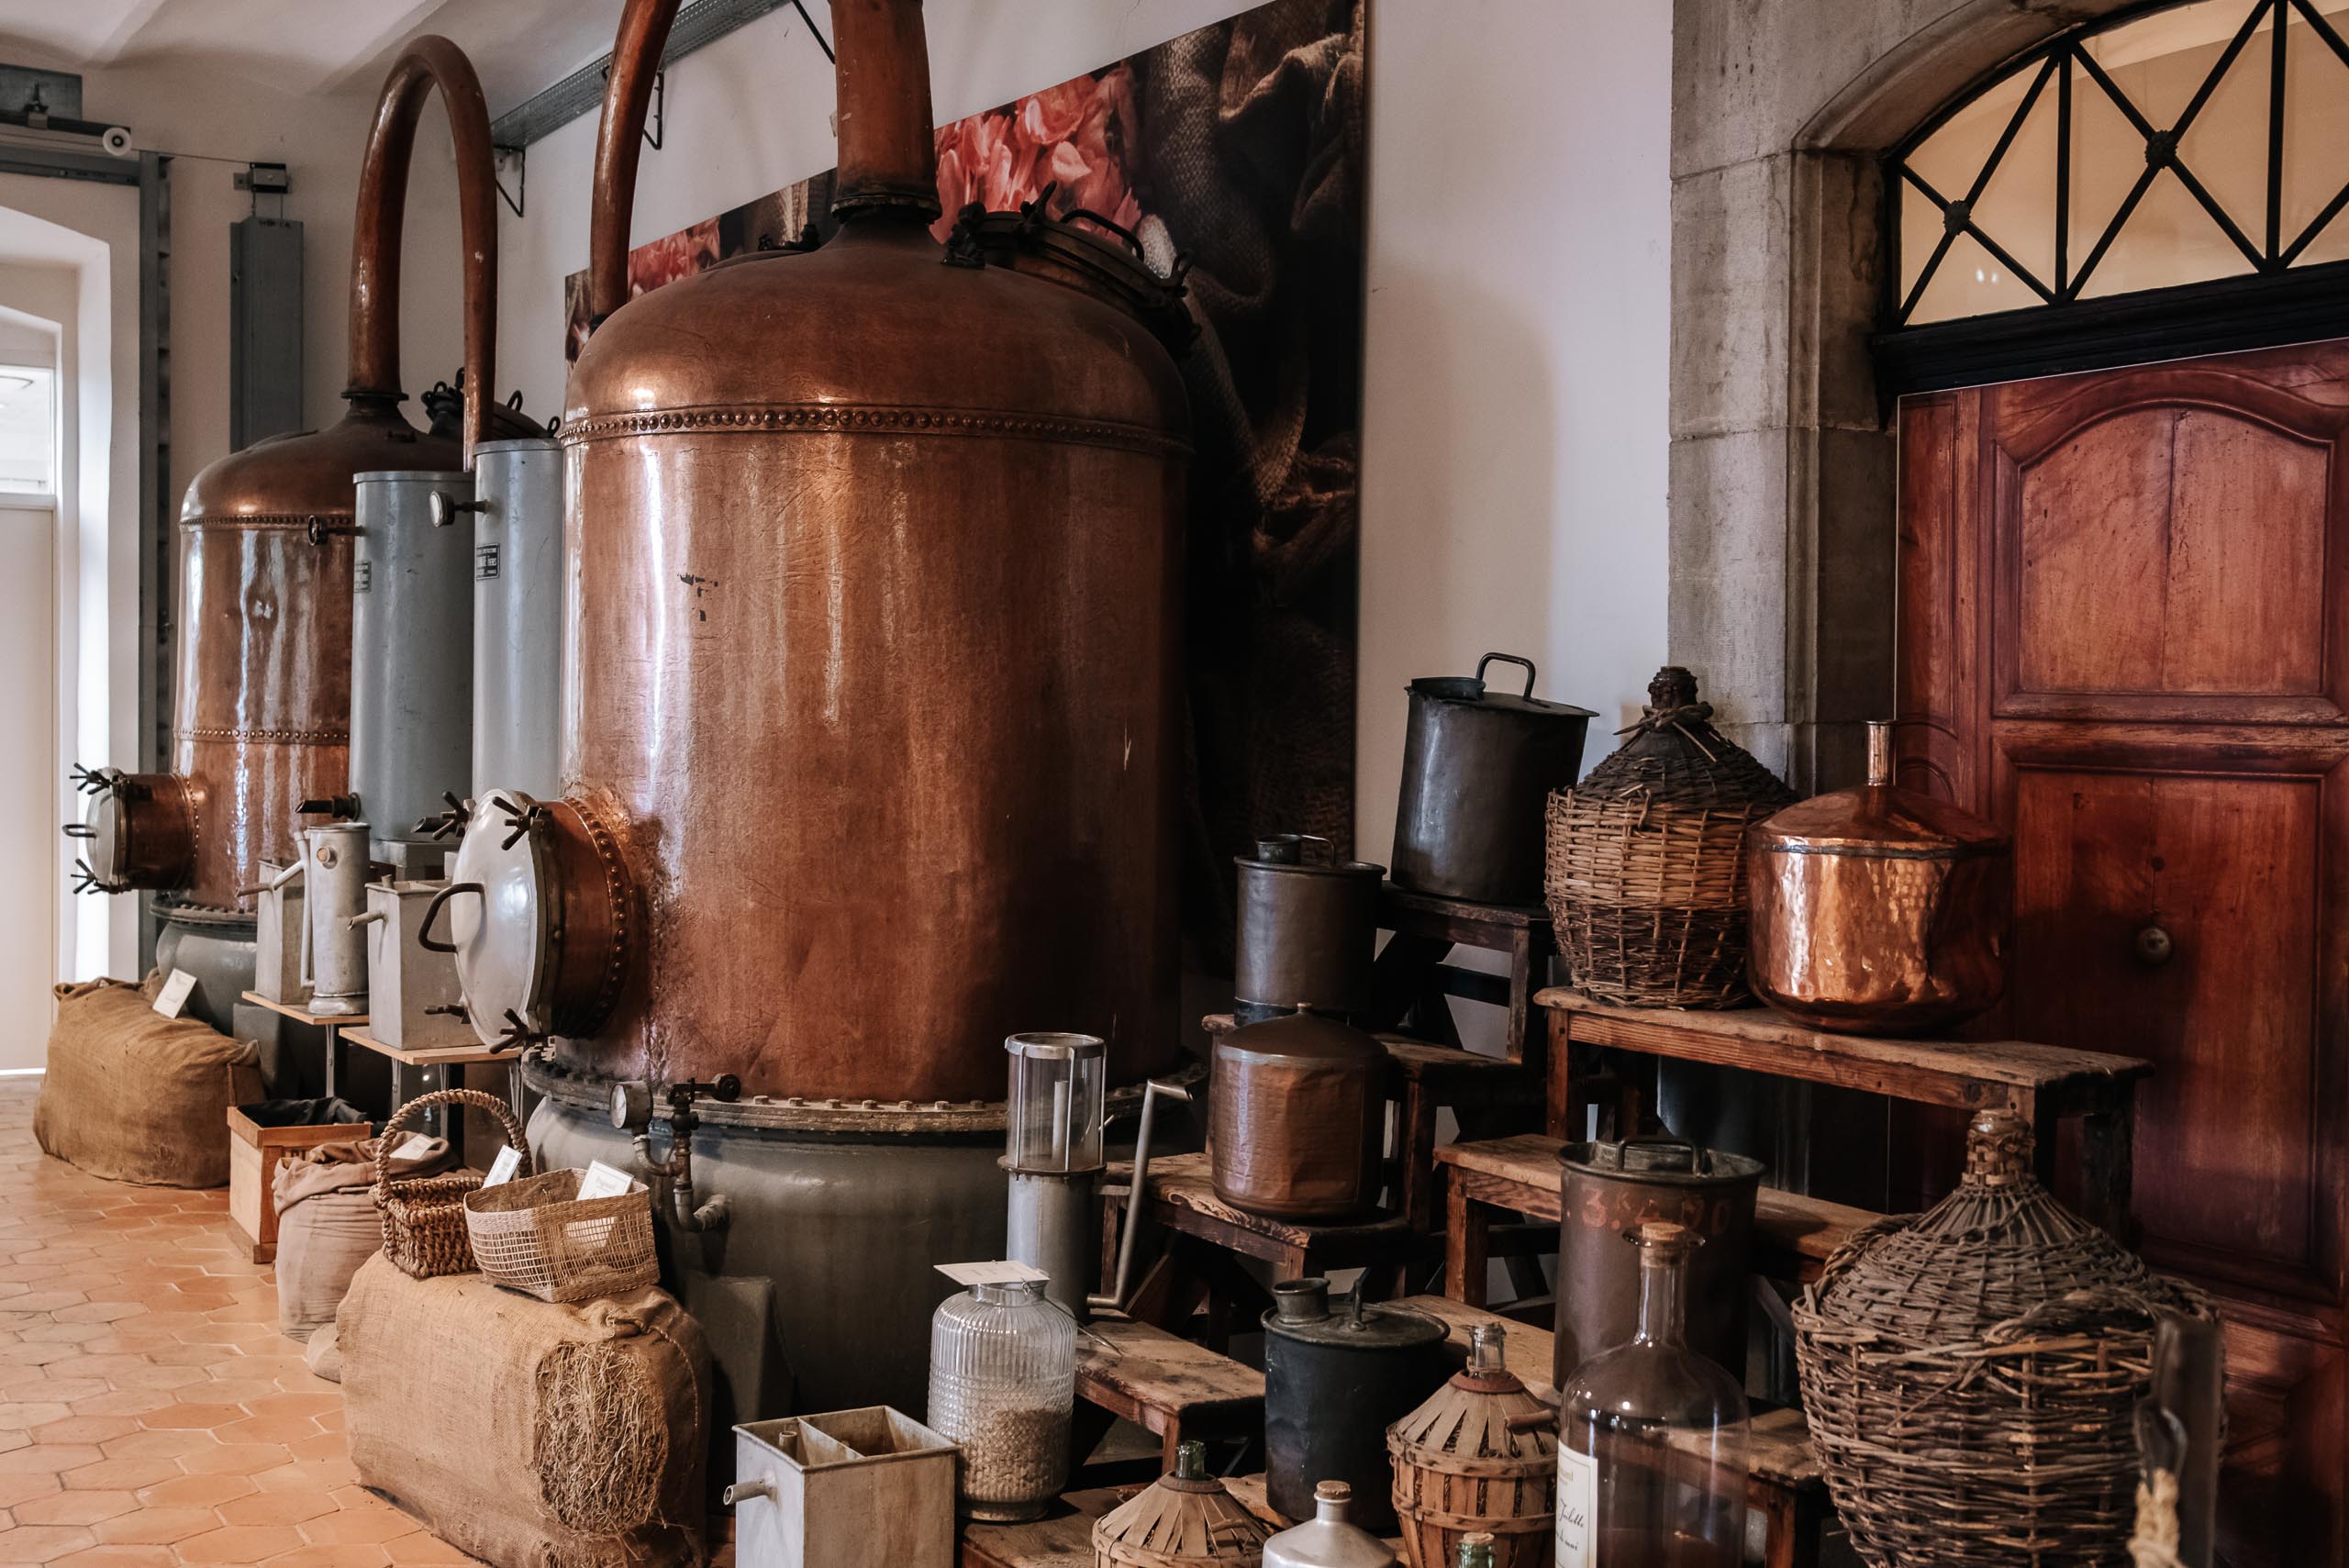 Parfumerie Fragonard - L'usine Historique Grasse